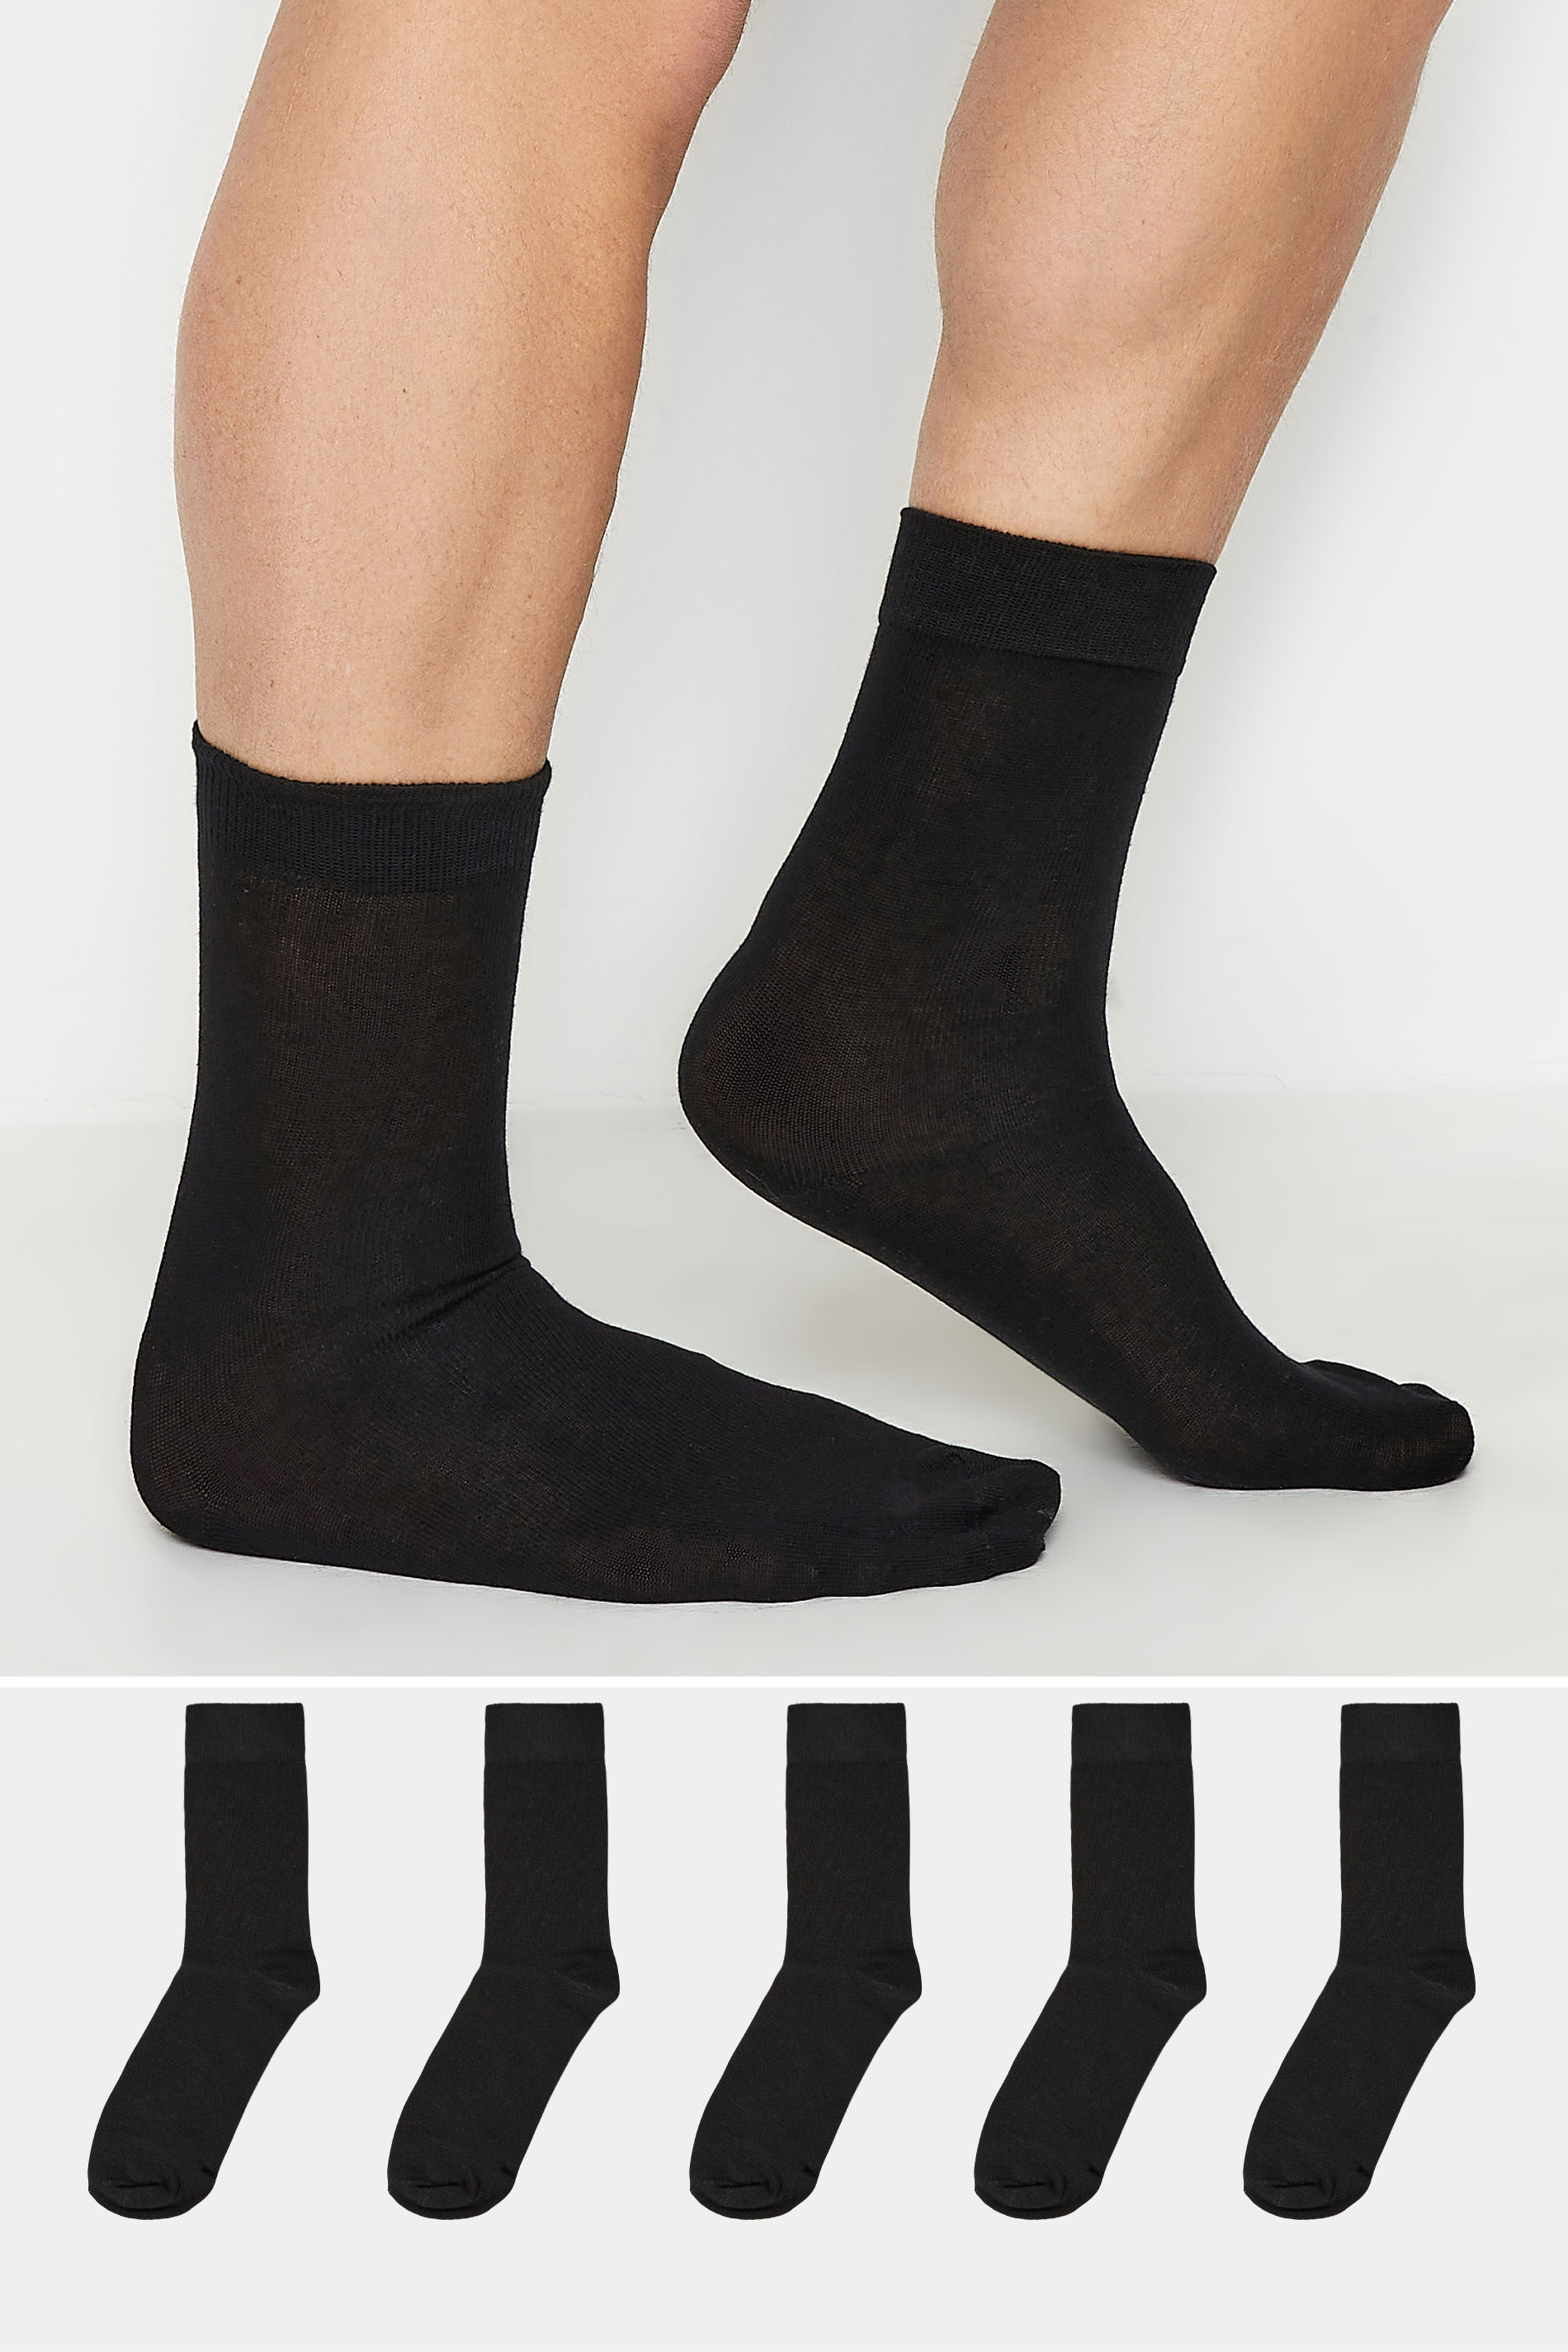 BadRhino Black 5 Pack Ankle Socks | BadRhino 1